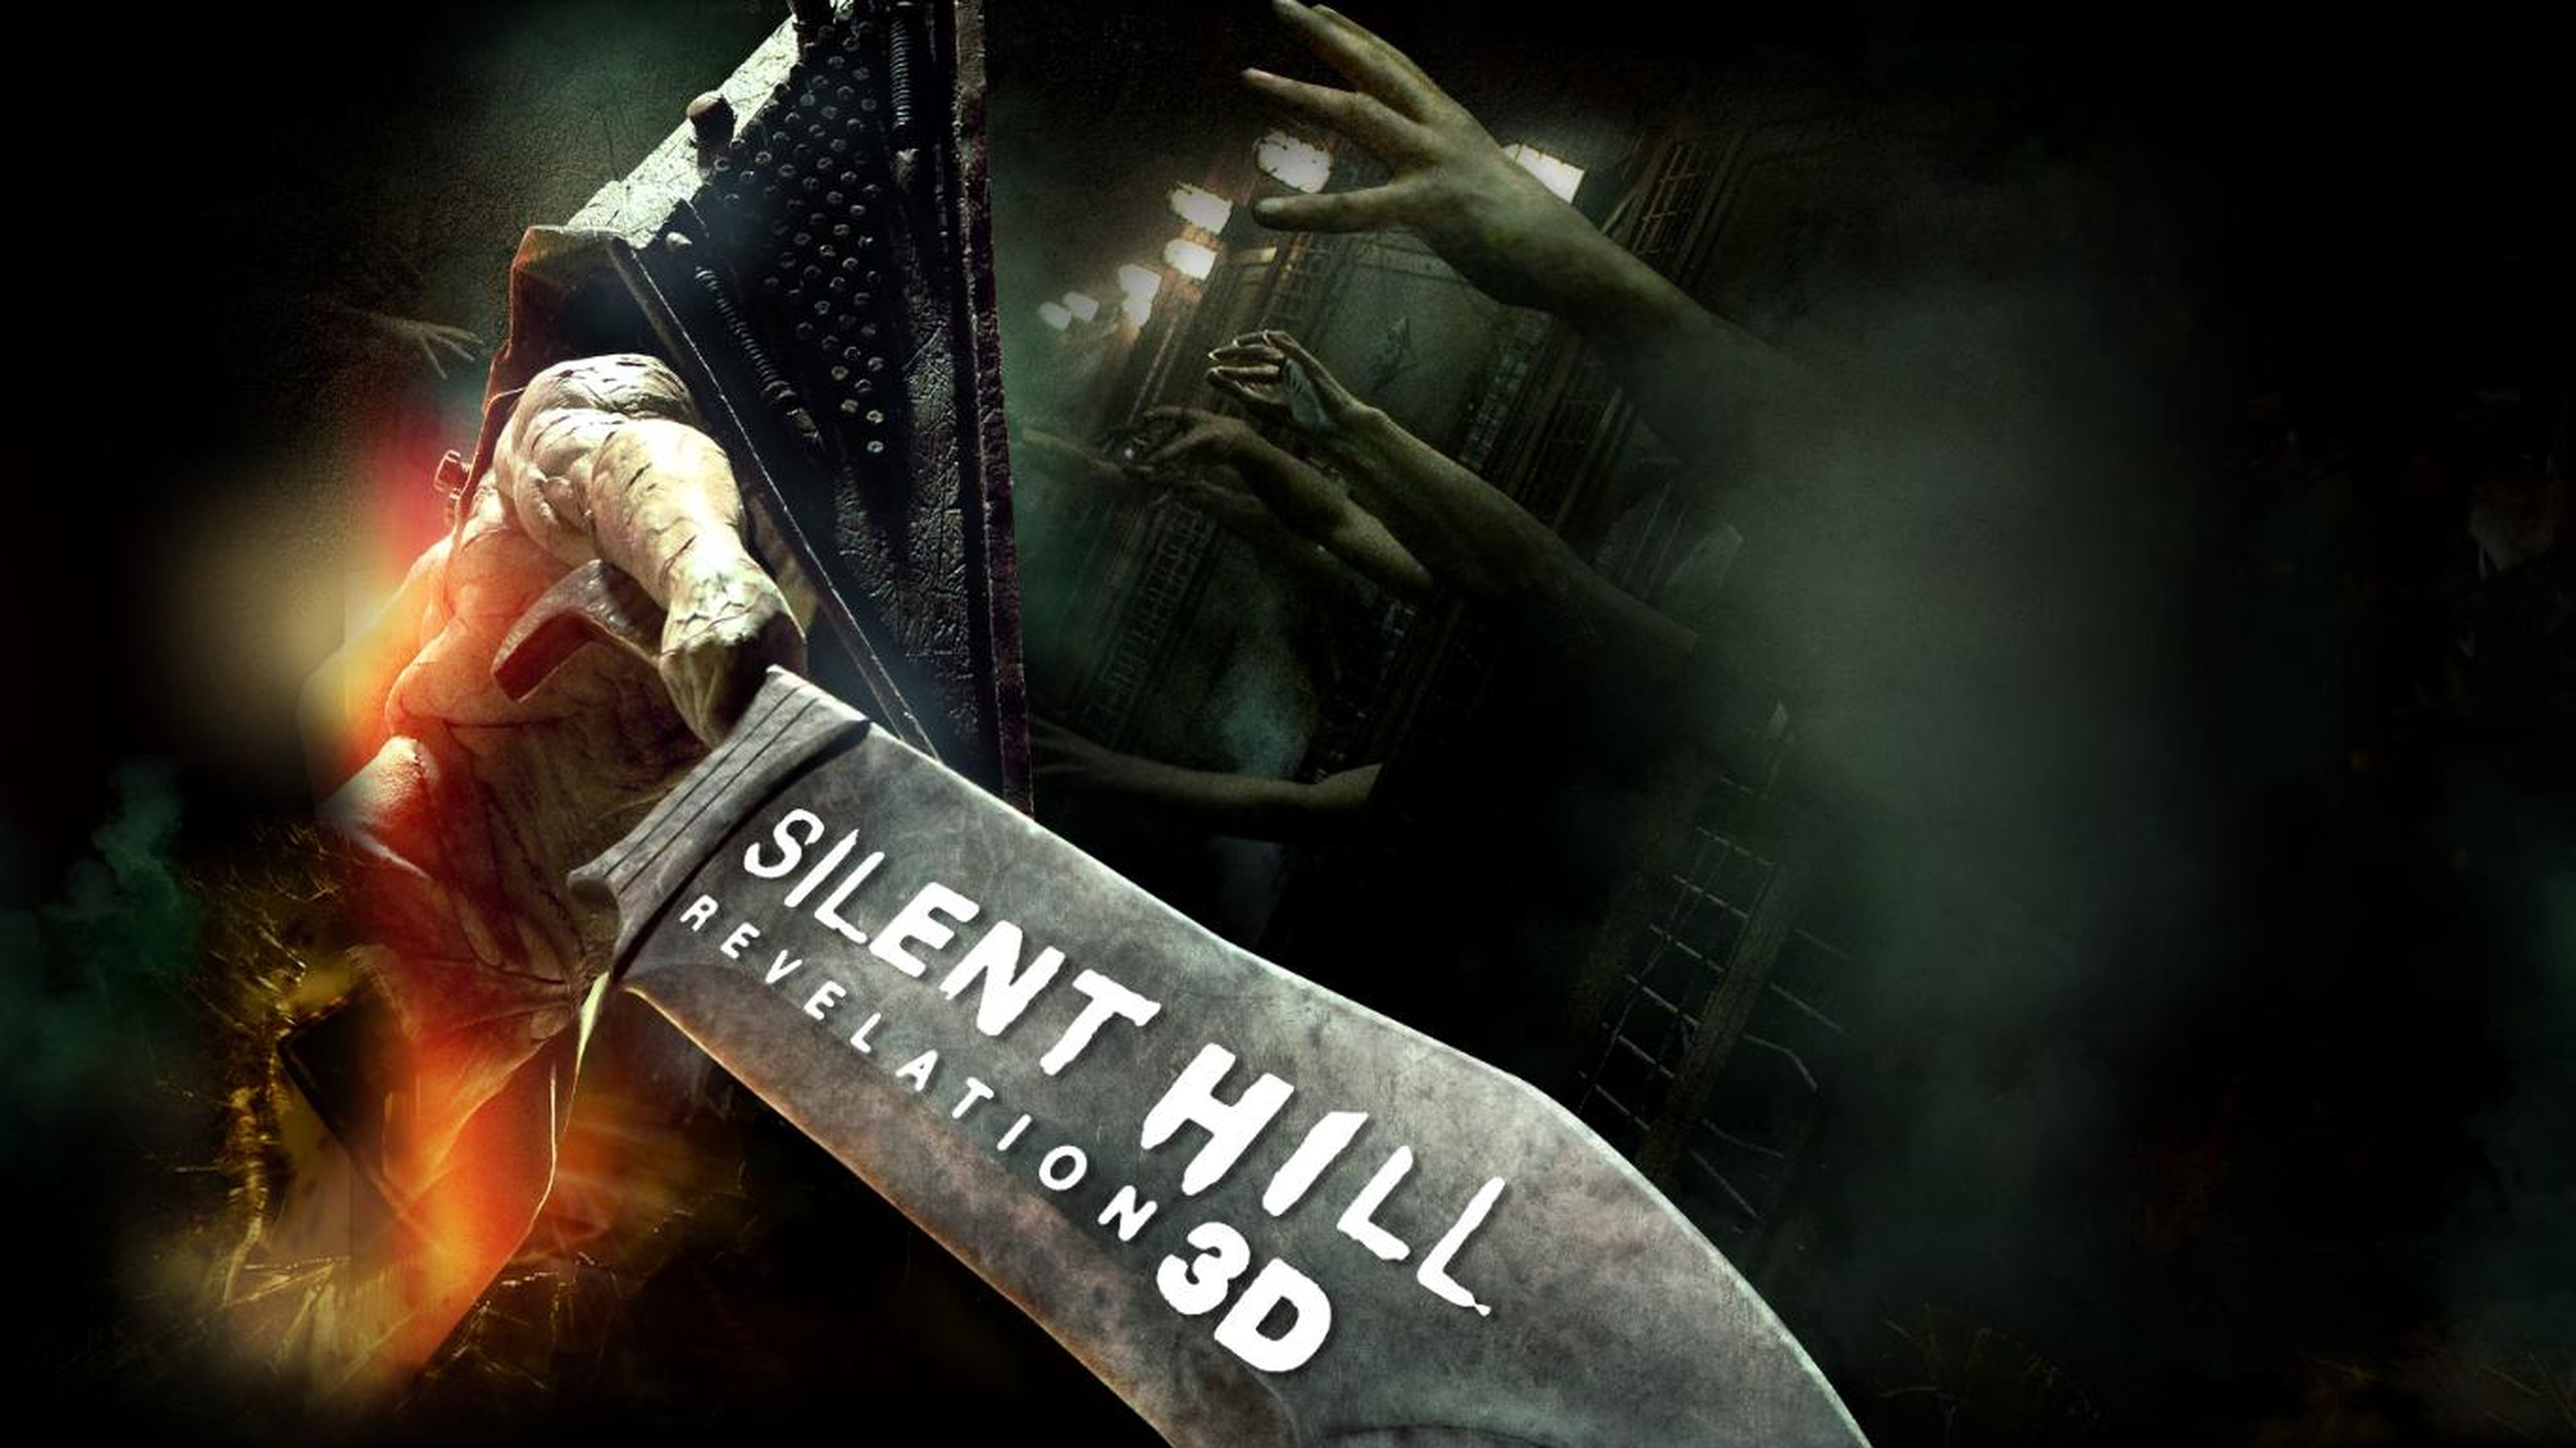 Silent Hill Revelation 3D se estrenará al fin en España vía Canal + Estrenos